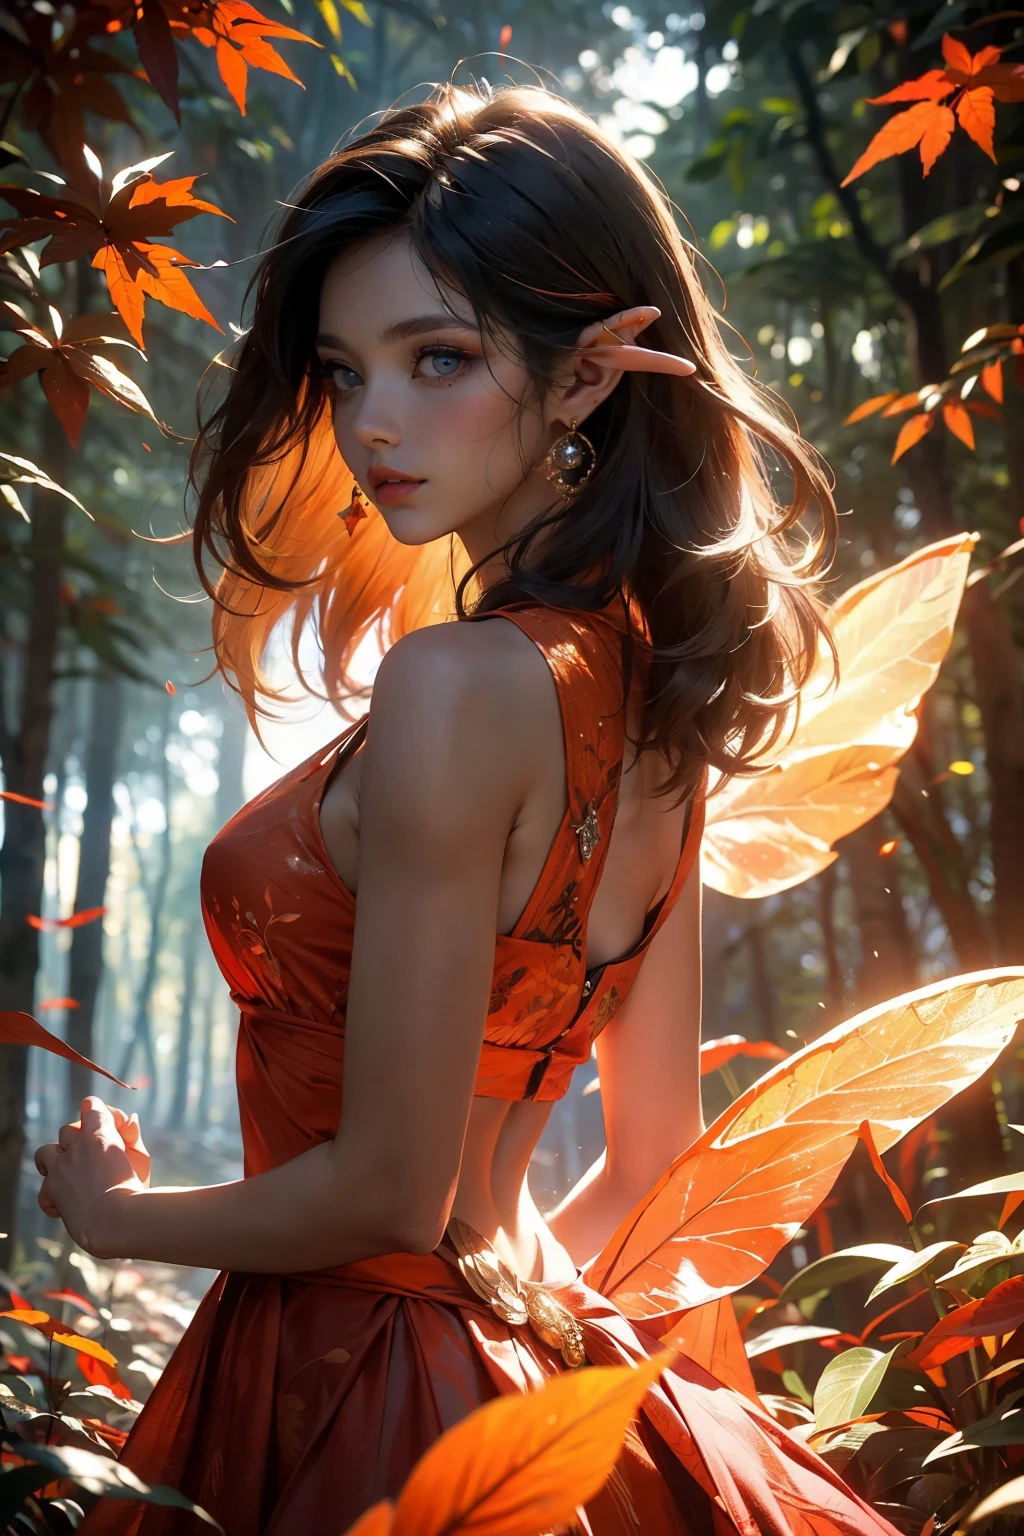 C&#39;est un ((ultra détaillé)) et ((meilleure qualité)) fantaisie (((chef-d&#39;œuvre))). Generate a beautiful wood faerie steting in the middle of a magical forest. Detailed leaves of oranges et reds float through the air et seem to swirl in a strong gust of vent. le ((les yeux des fées sont importants)) et are beautiful eyes, ((Des yeux réalistes et détaillés)), yeux intéressants, et (((yeux colorés))) avec des motifs complexes. Her clothes are soft et in autumnal hues, avec de la soie fluide qui danse dans la brise. Utiliser ((composition dynamique)) et cinematic lighting to create a compelling image. Inclure de beaux yeux, (lèvres gonflées), feuilles d&#39;oranger, feuilles rouges détaillées, rayons de lumière brumeux, vent, froid 